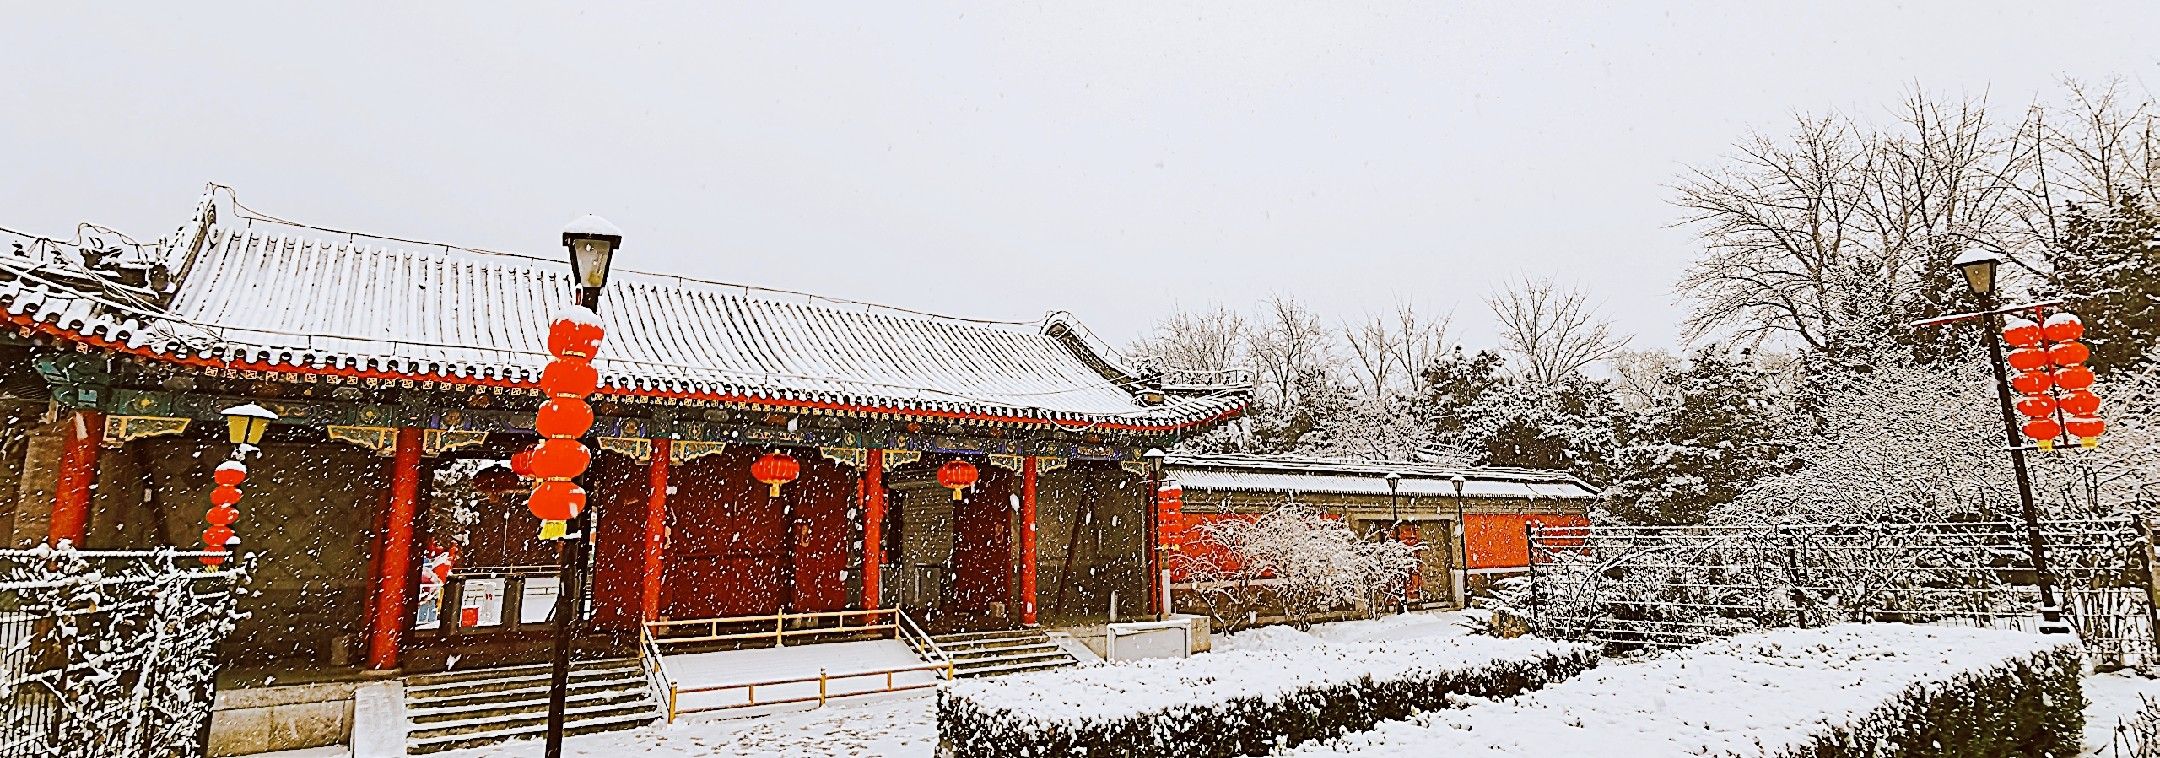 【北京·海淀·圆明园】圆明园又称圆明三园，是清代大型皇家园林，它坐落在北京西北郊，与颐和园毗邻，由圆